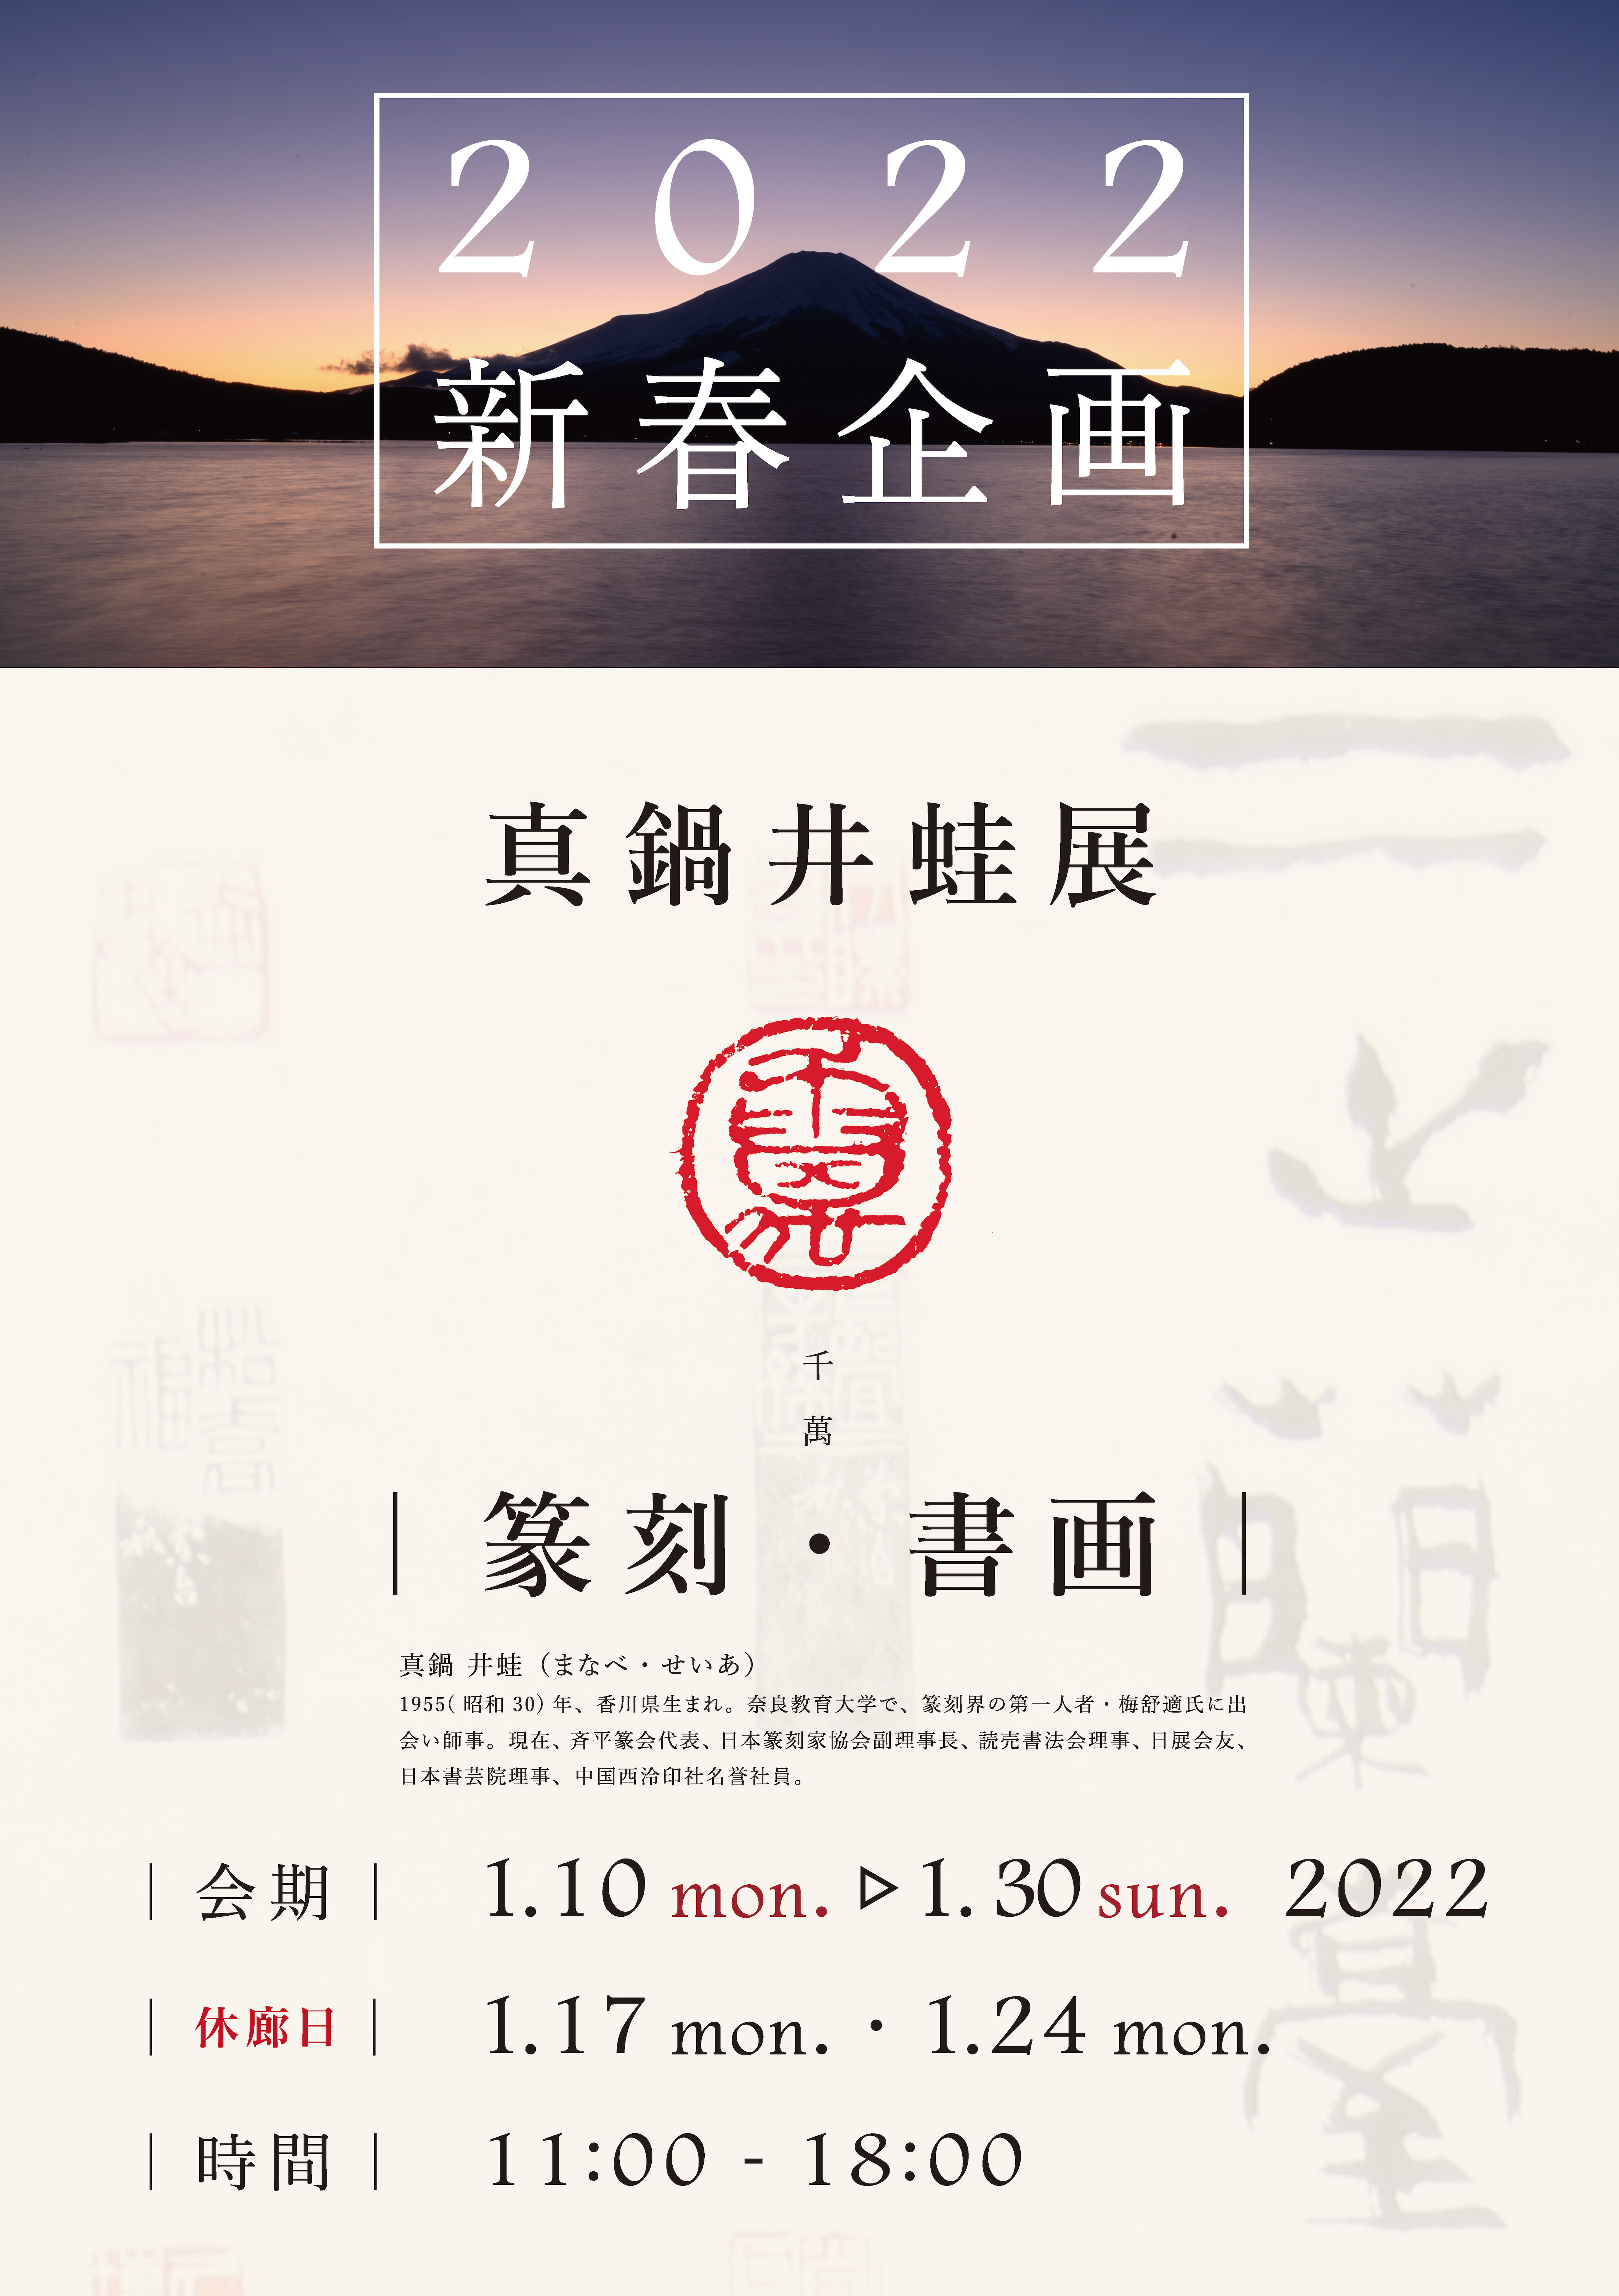 日本 書 芸 院展 2022